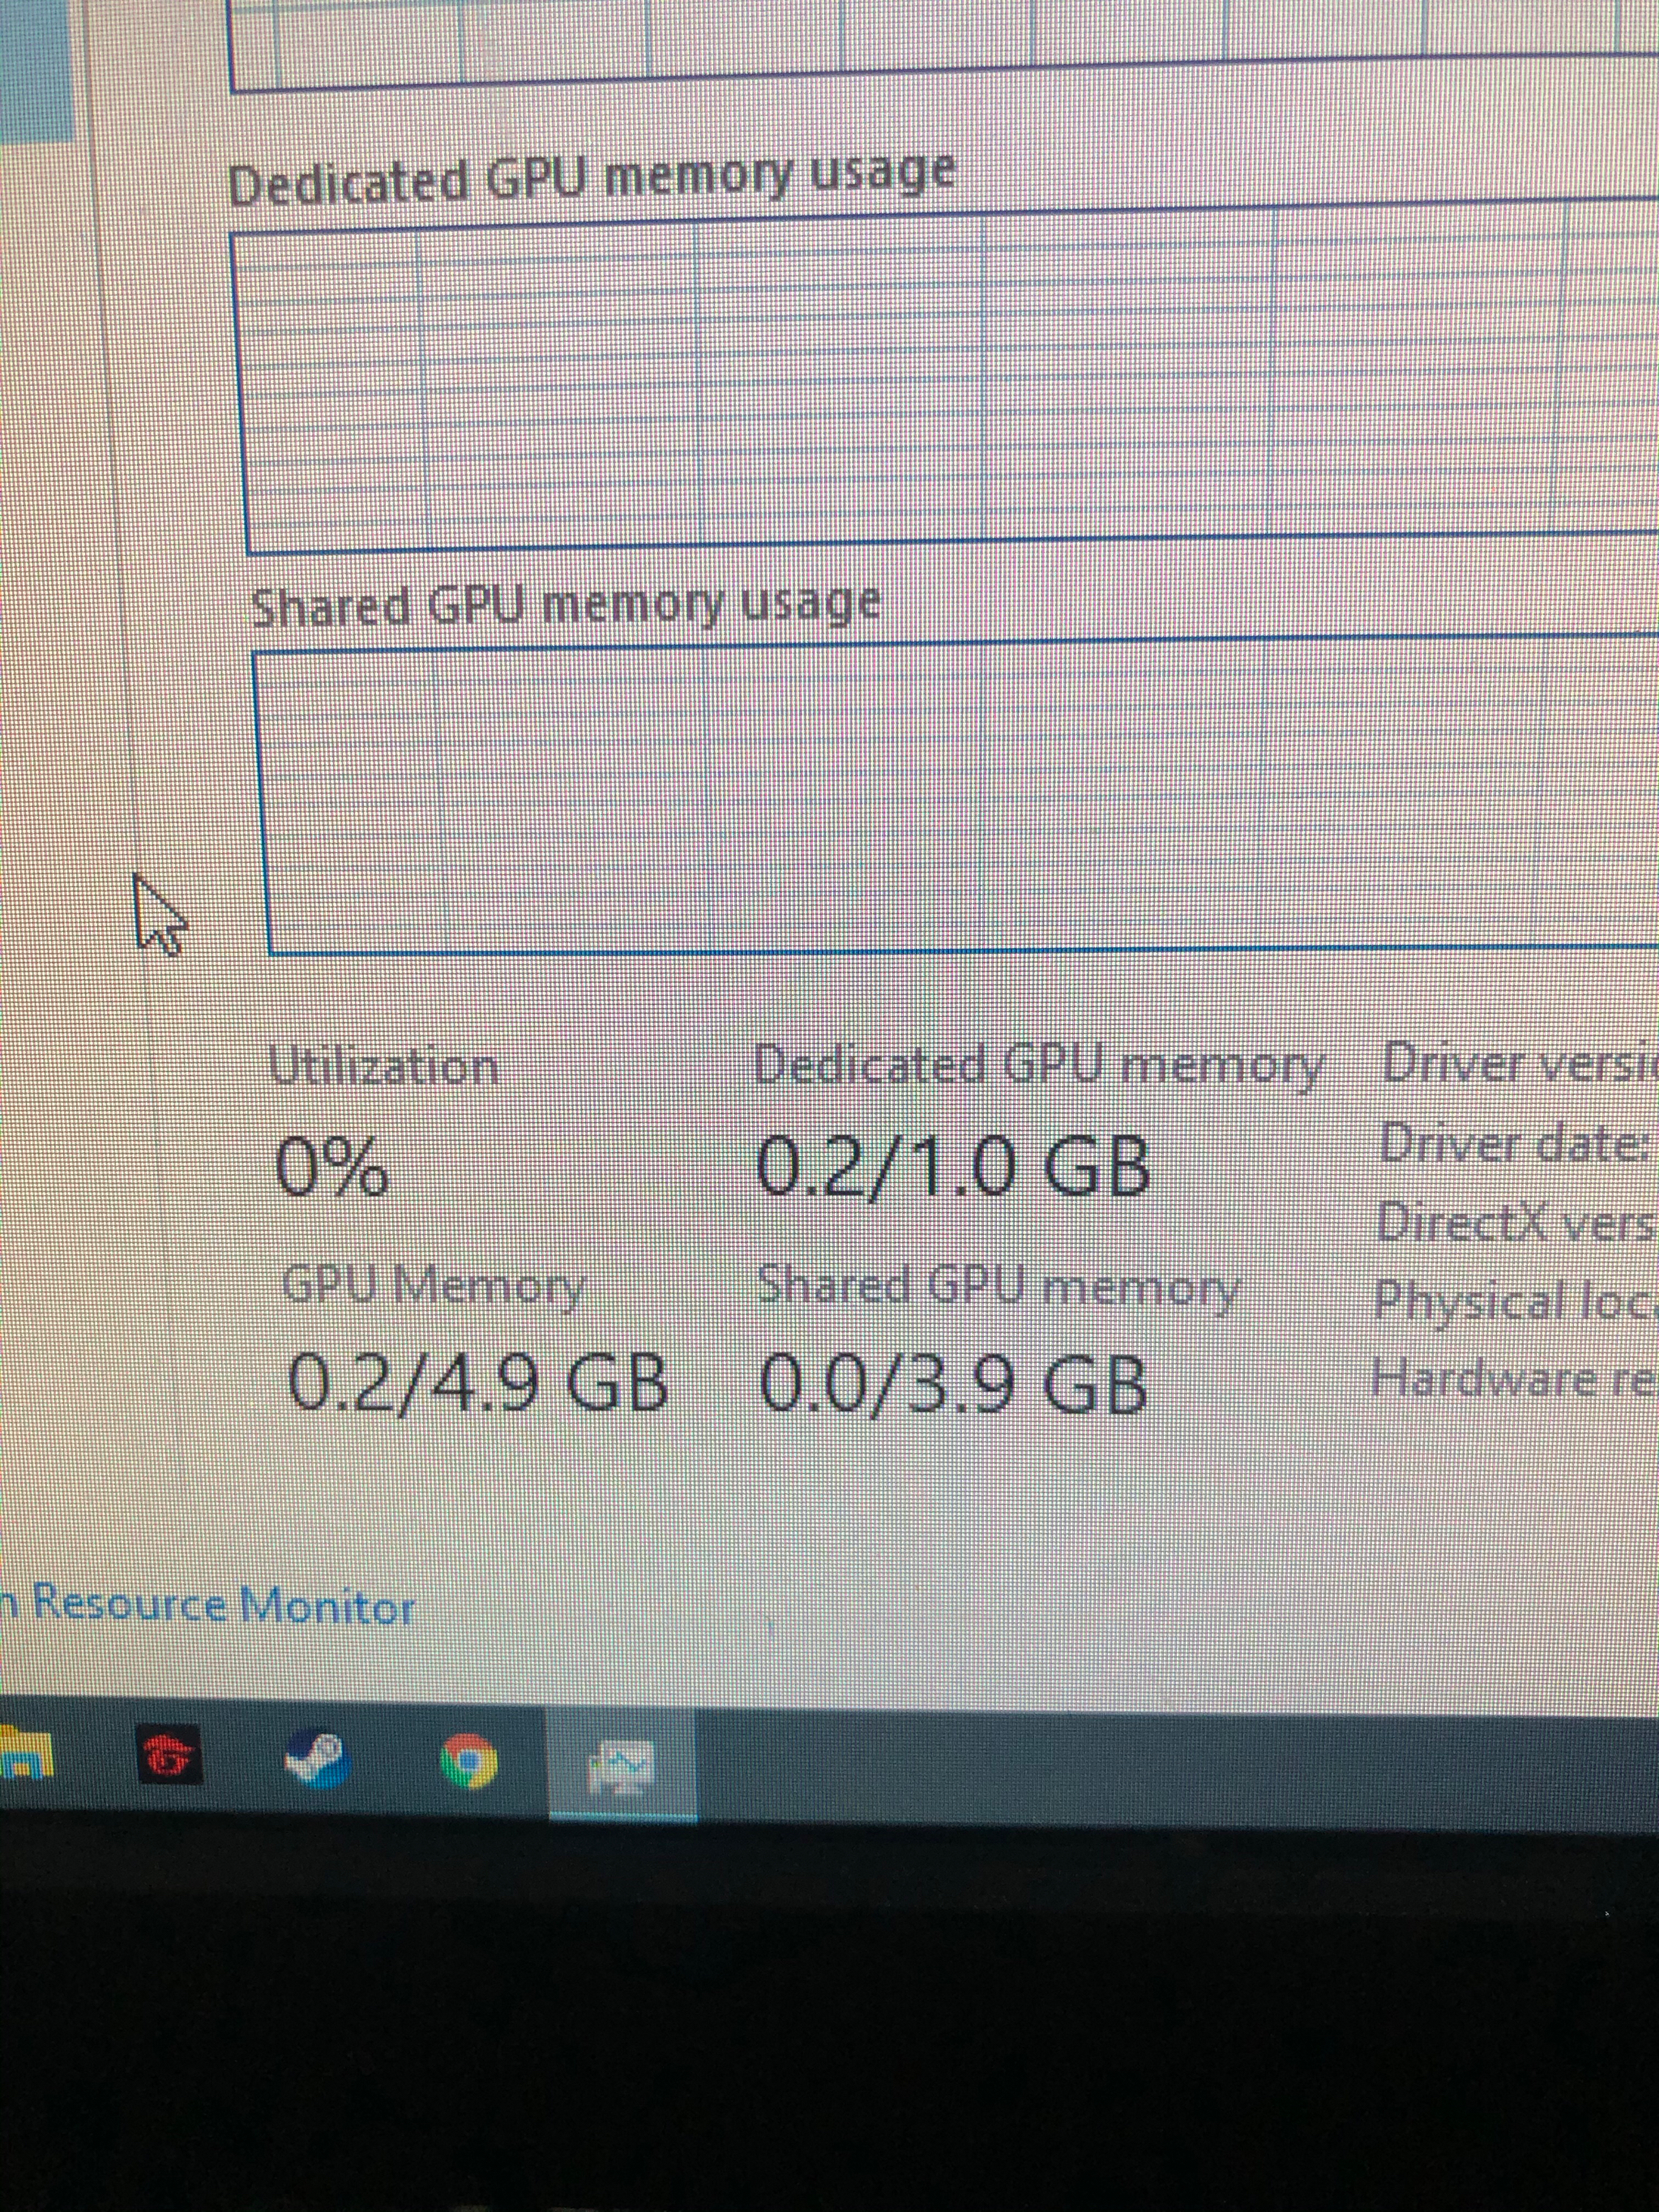 Giới thiệu về GPU Memory